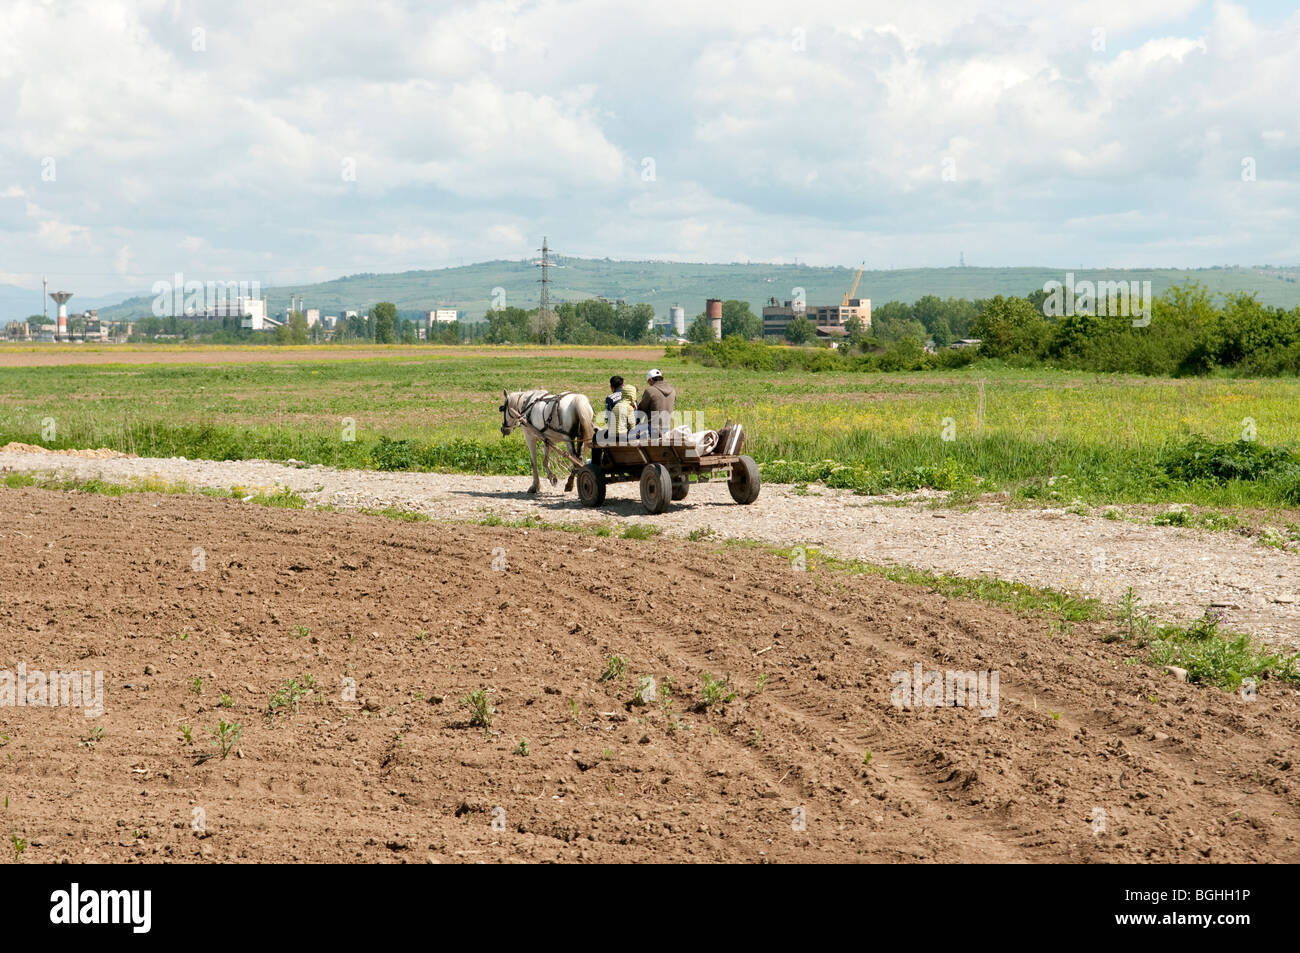 Roma Gypsys on horse and cart near Ploiesti Romania Eastern Europe Stock Photo